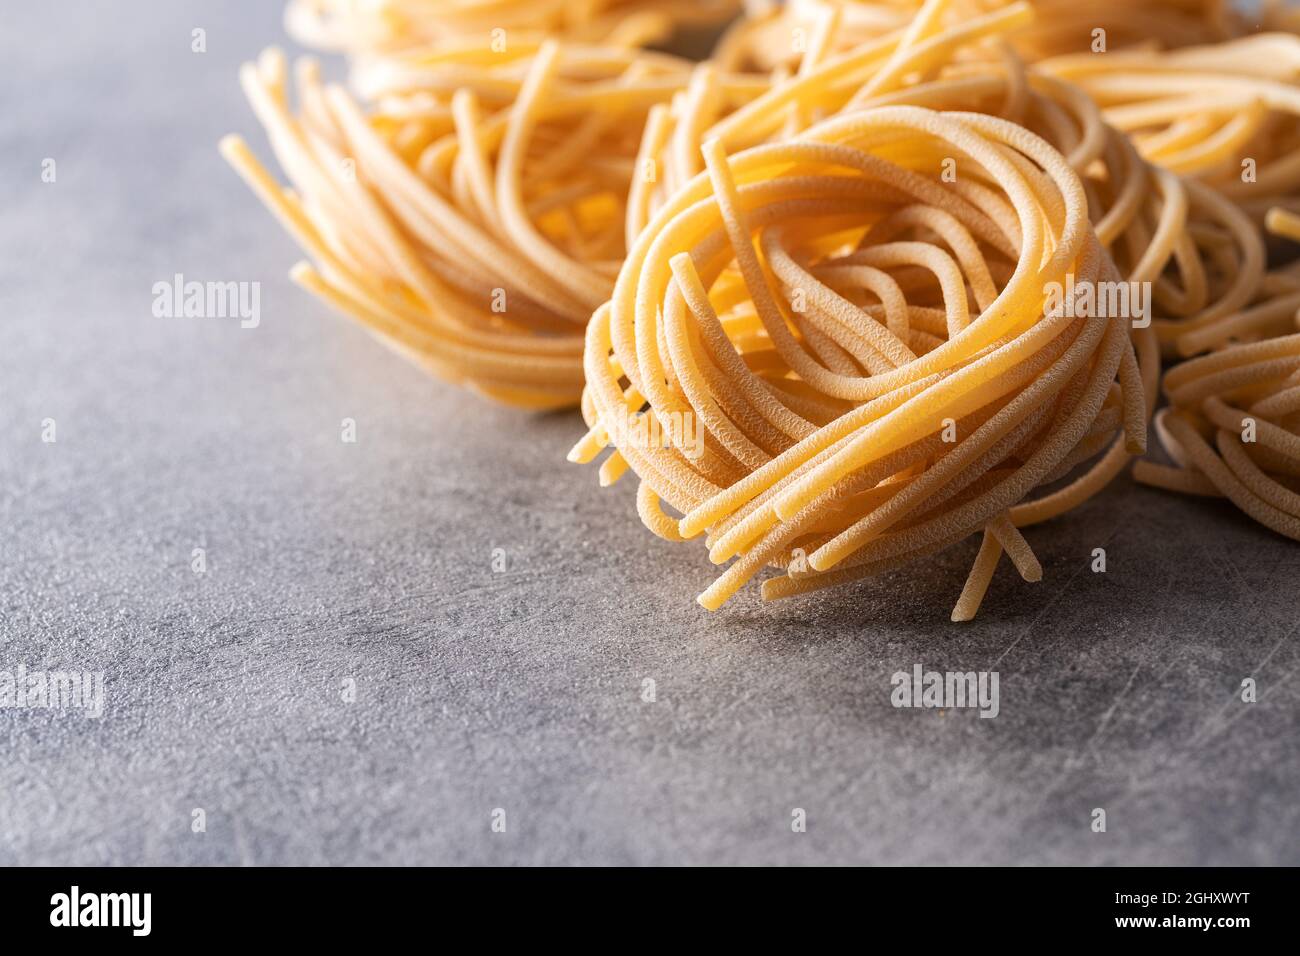 Italian pasta nest. Uncooked spaghetti nest on kitchen table. Stock Photo